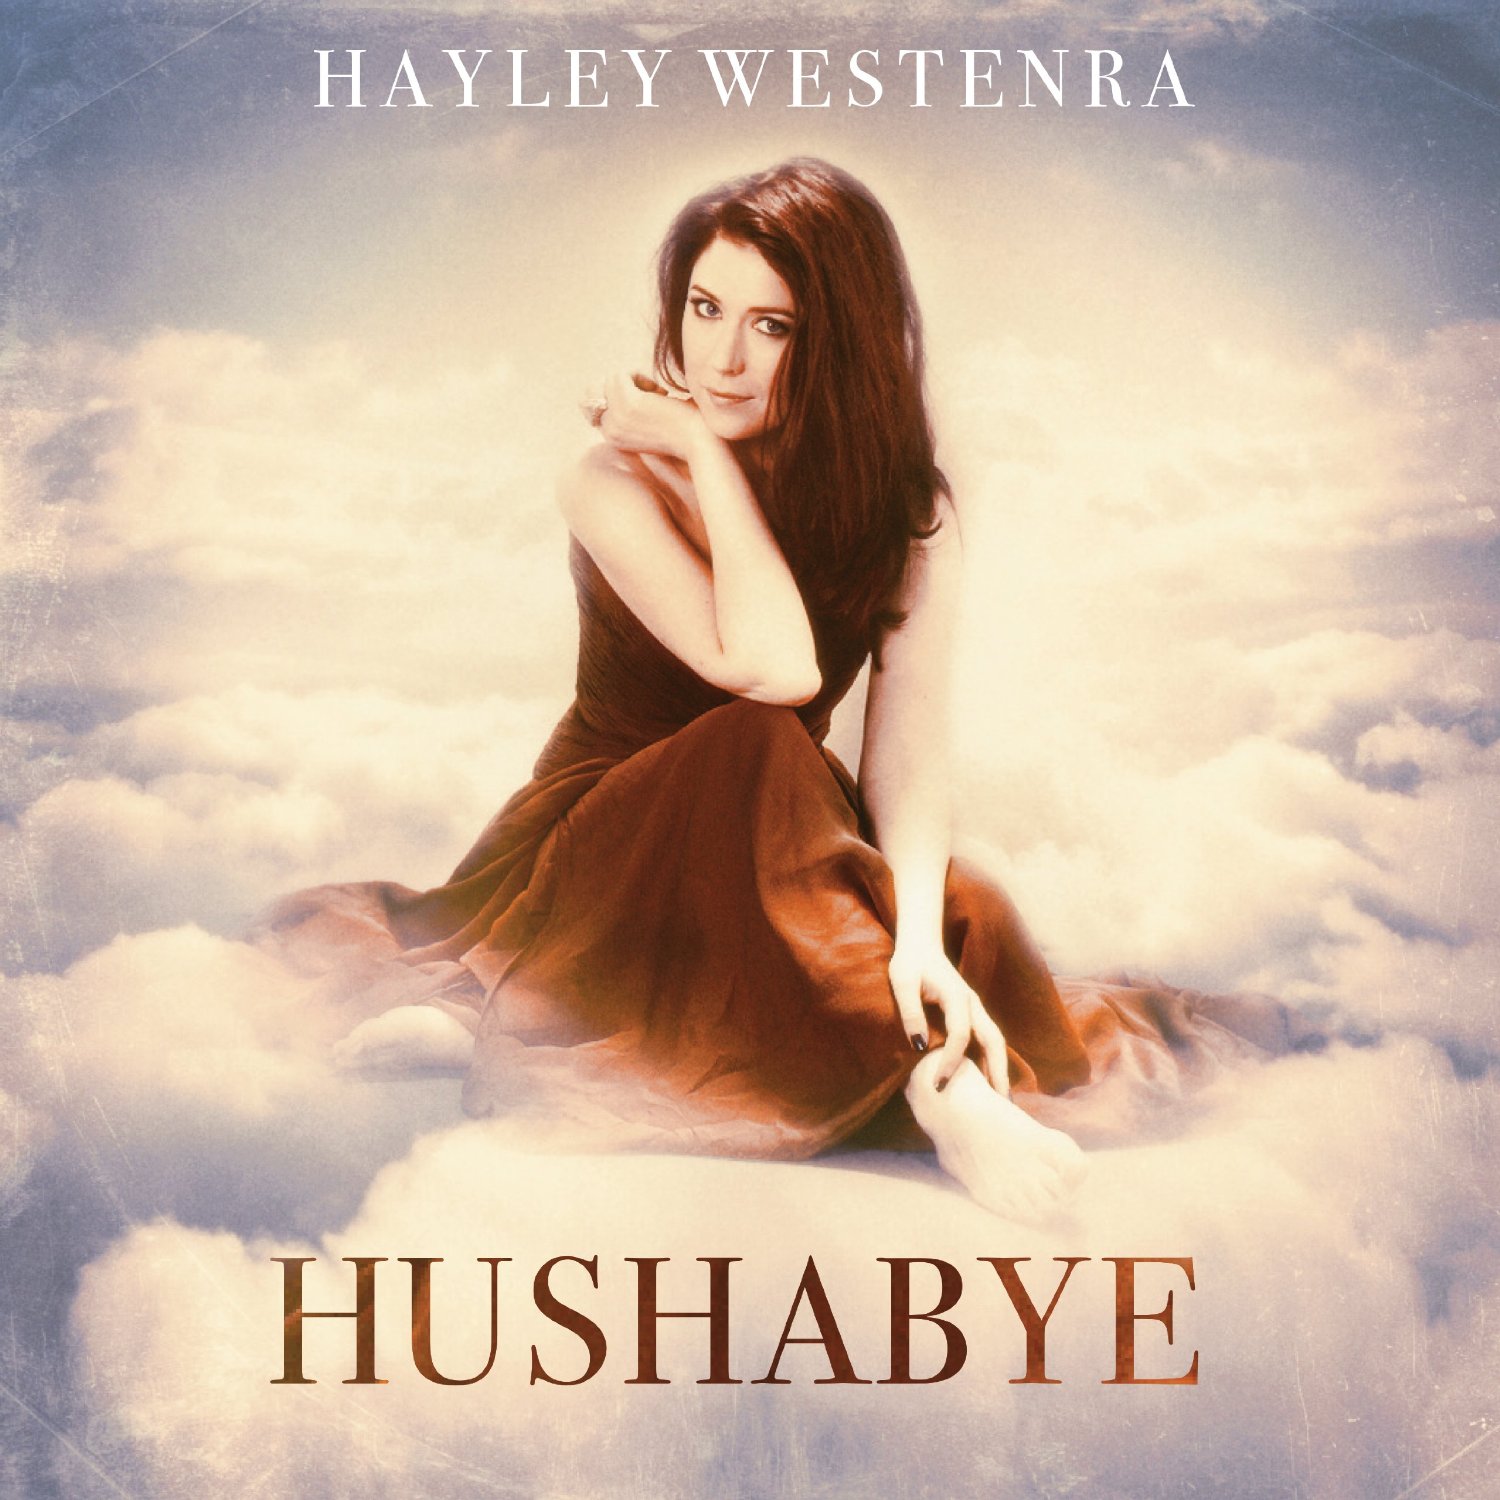 Hayley Westenra's new release